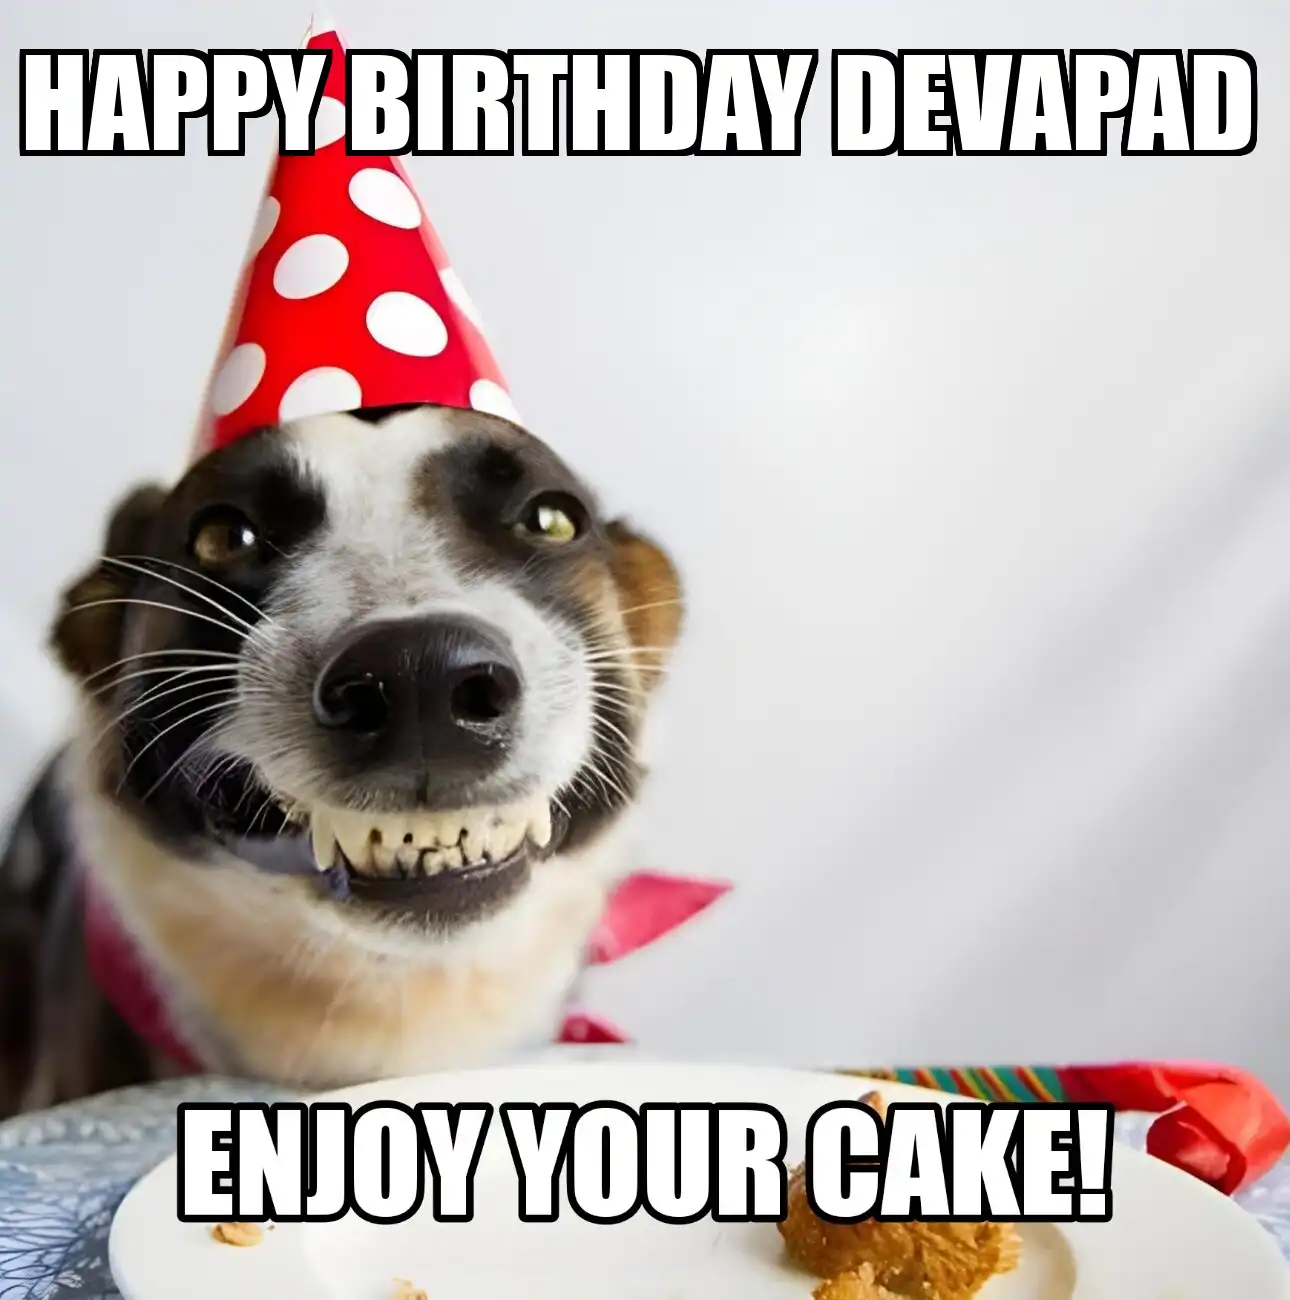 Happy Birthday DevaPad Enjoy Your Cake Dog Meme